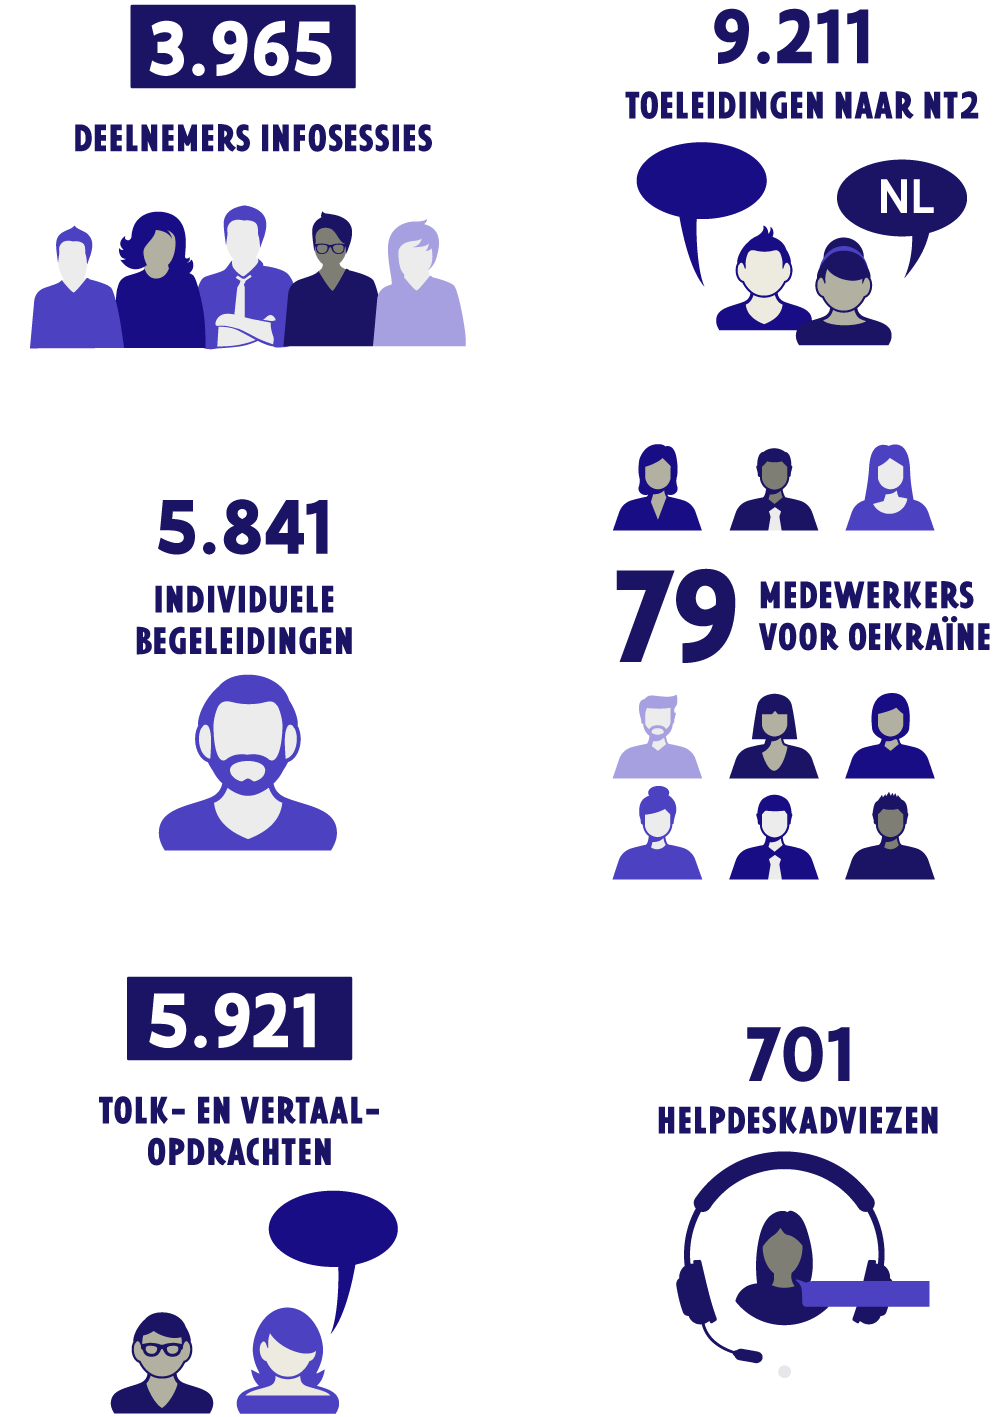 Infographic Oekraïne-werking in 2022: 3965 deelnemers infosessies, 9211 toeleiding naar NT2, 701 helpdeskadviezen, 5841 individuele begeleidingen, 5921 tolk- en vertaalopdrachten, 79 medewerkers voor Oekraïne